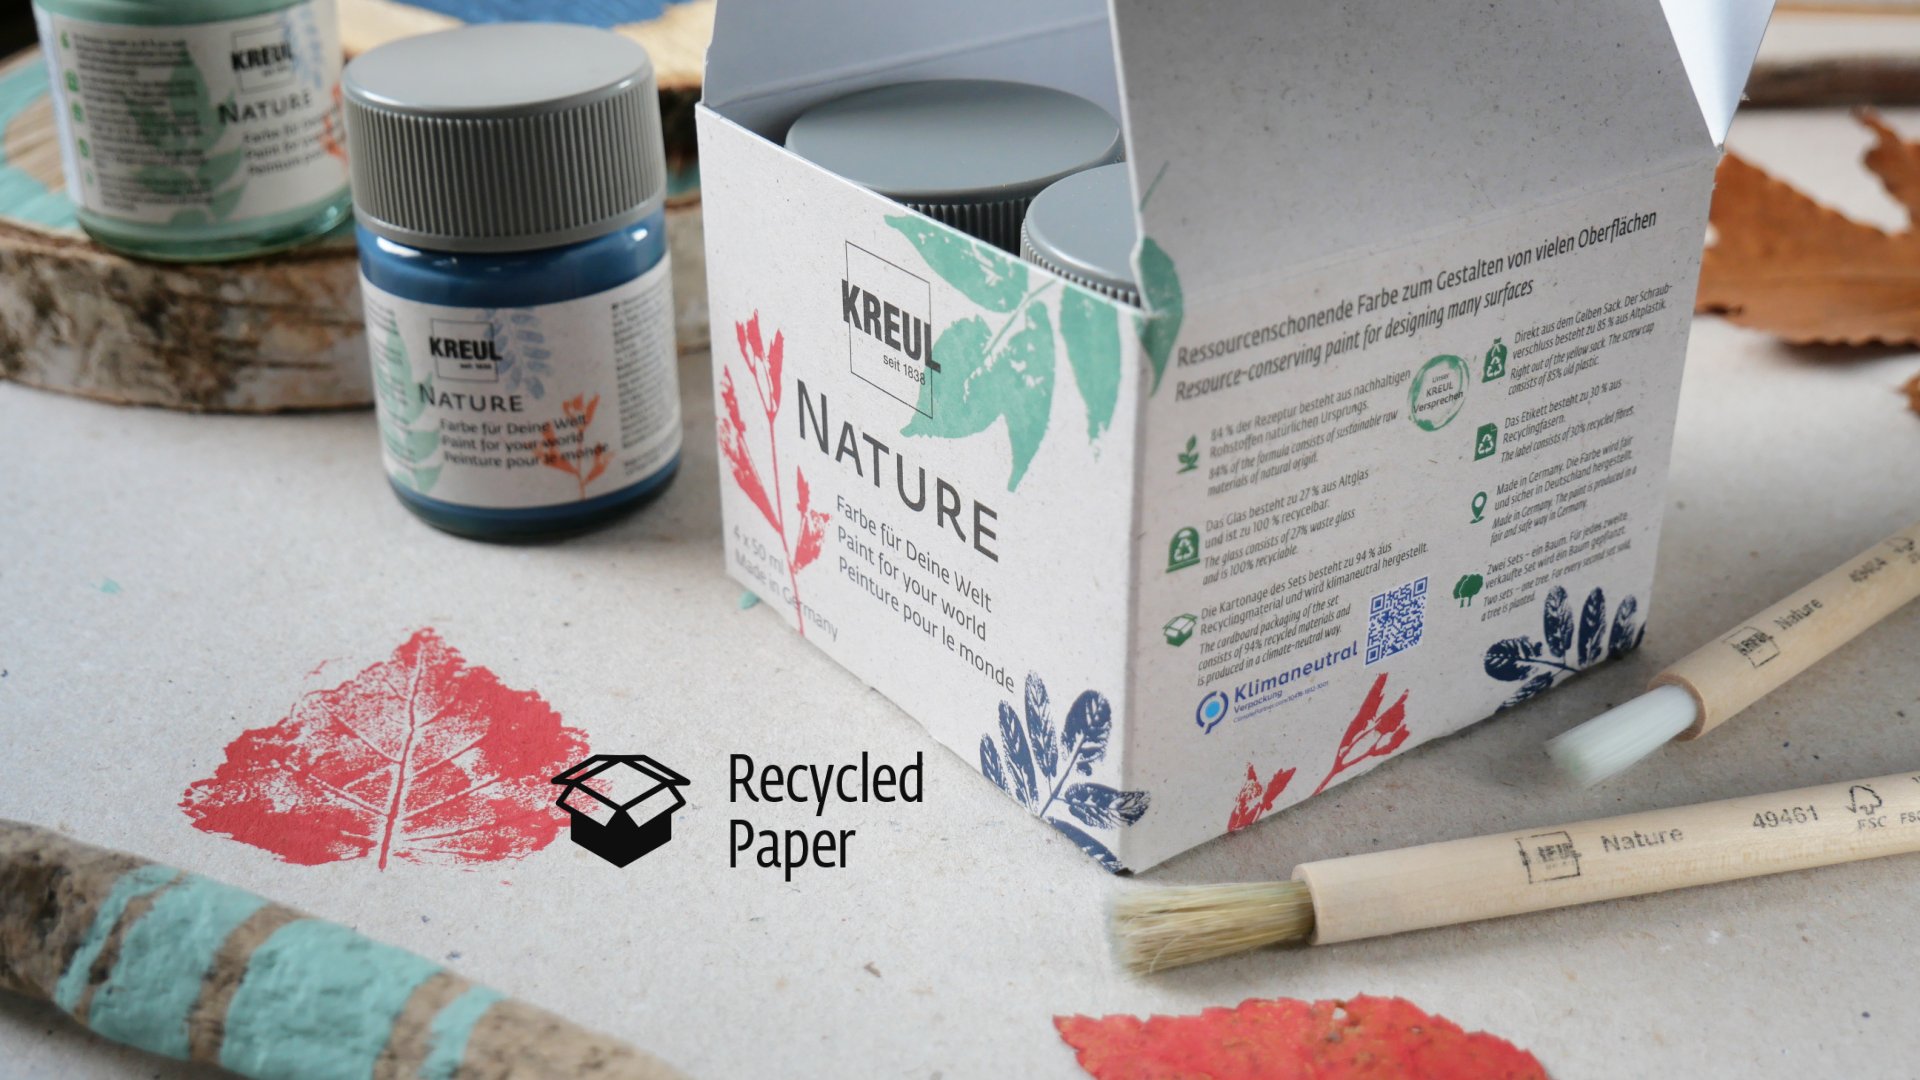 Karton Verpackung KREUL Nature Set mit aufgedrucktem Nachhaltigkeits Icon Recycled Paper